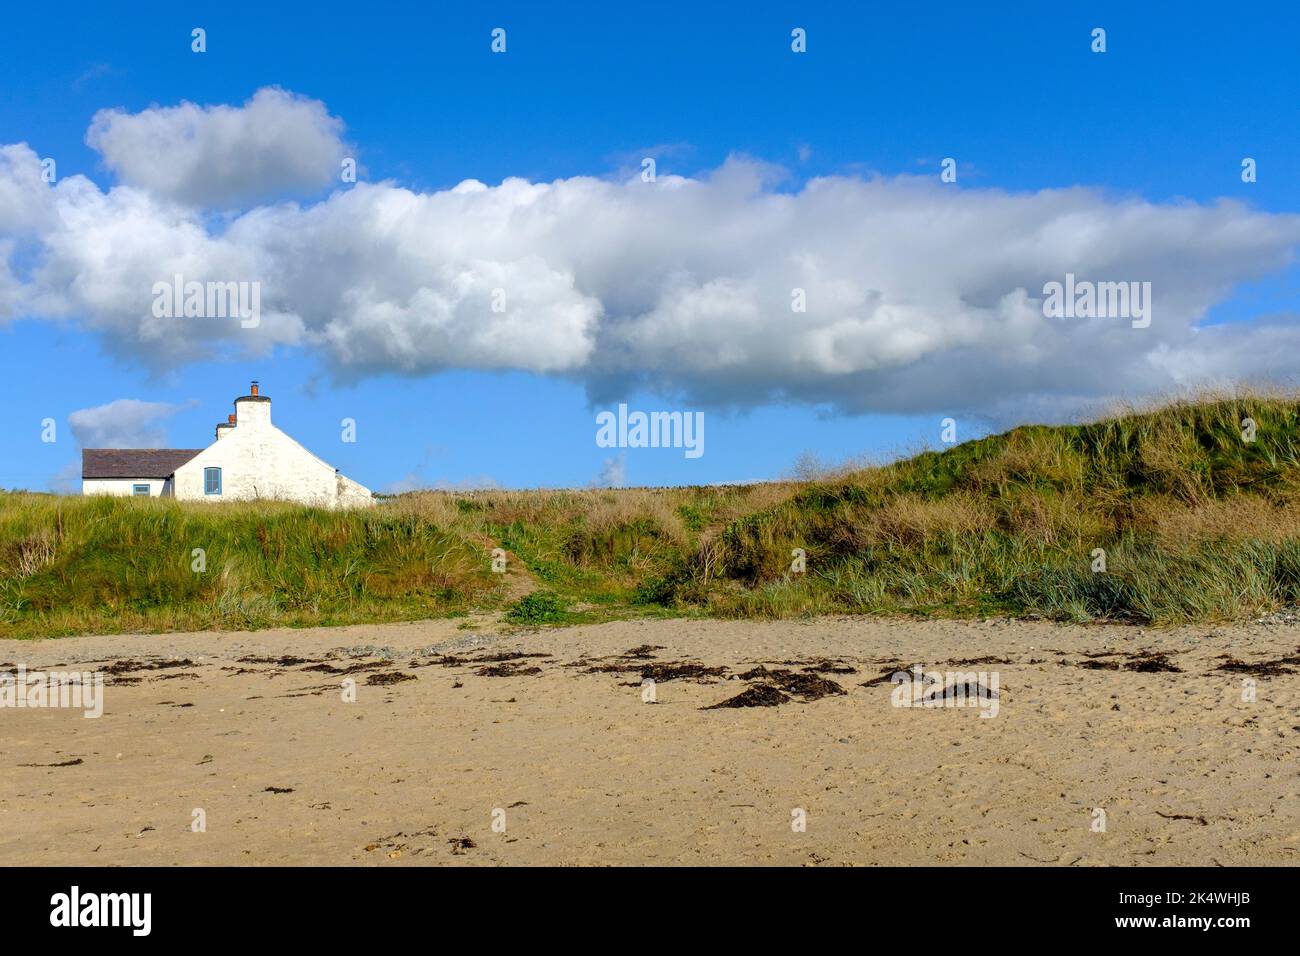 Nuages blancs dans un ciel bleu clair au-dessus d'un simple cottage au-dessus des dunes de sable à Rhosneigr, au nord du pays de Galles, au Royaume-Uni Banque D'Images